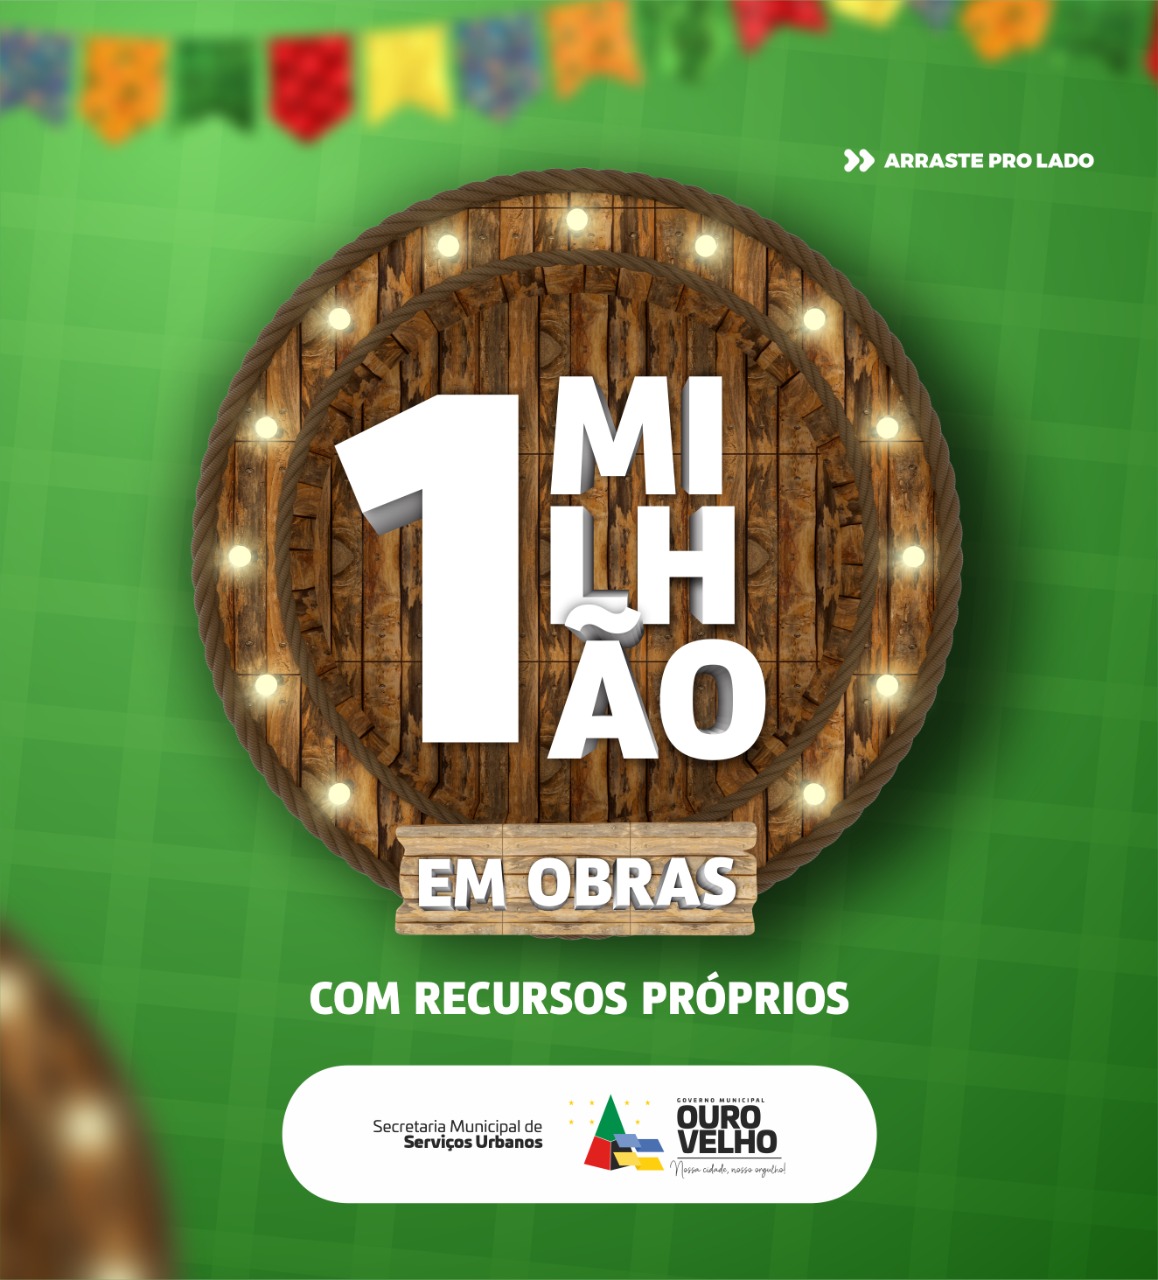 Ouro Velho: Prefeito Augusto Valadares lança pacote de obras que somam 1 milhão de reais